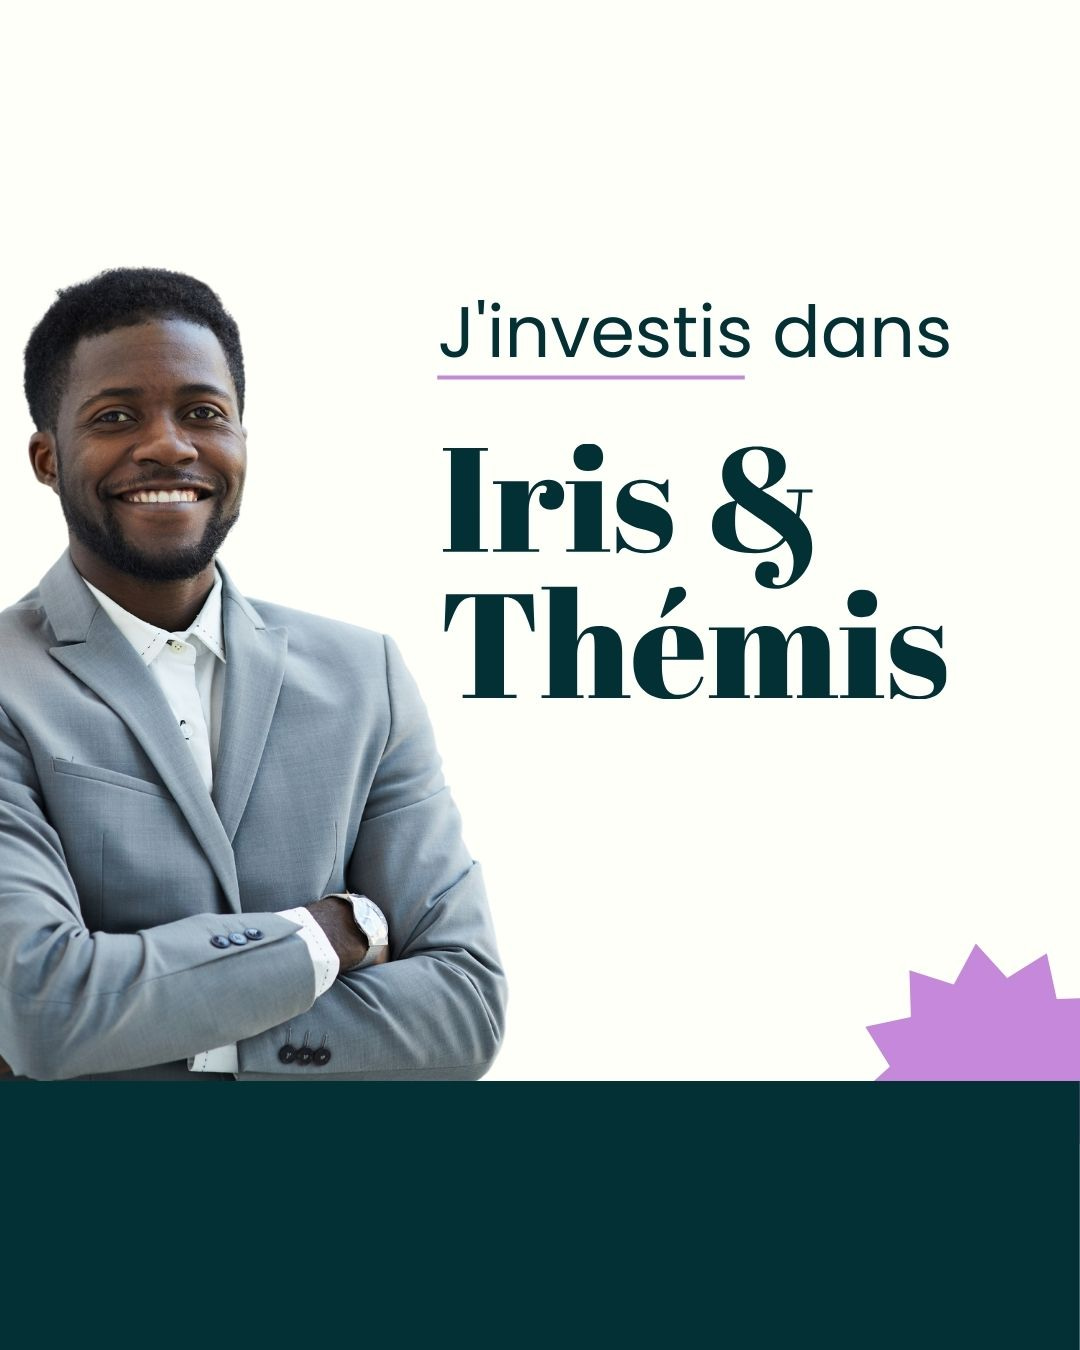 visuel investissement qui comprend une photo de la personne et le texte "j'investis dans Iris et Thémis"